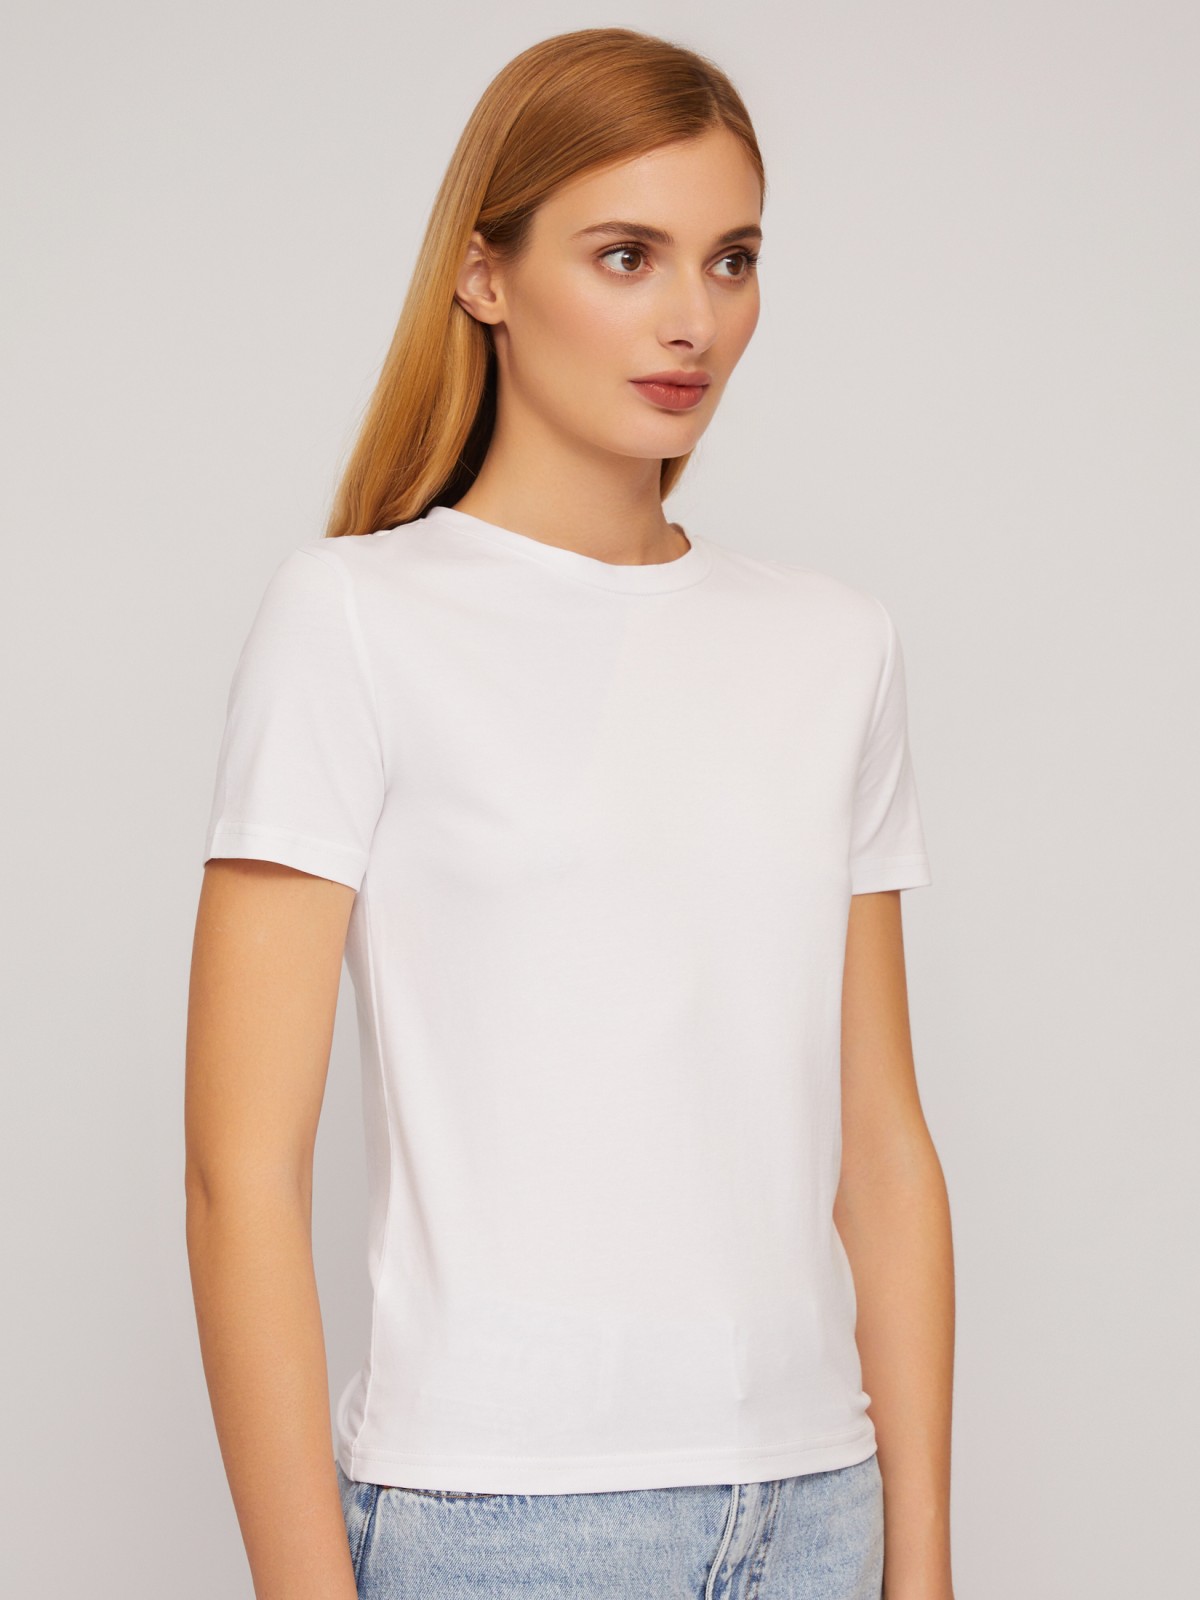 Трикотажный базовая футболка из хлопка без принта zolla 024233264132, цвет белый, размер XS - фото 5